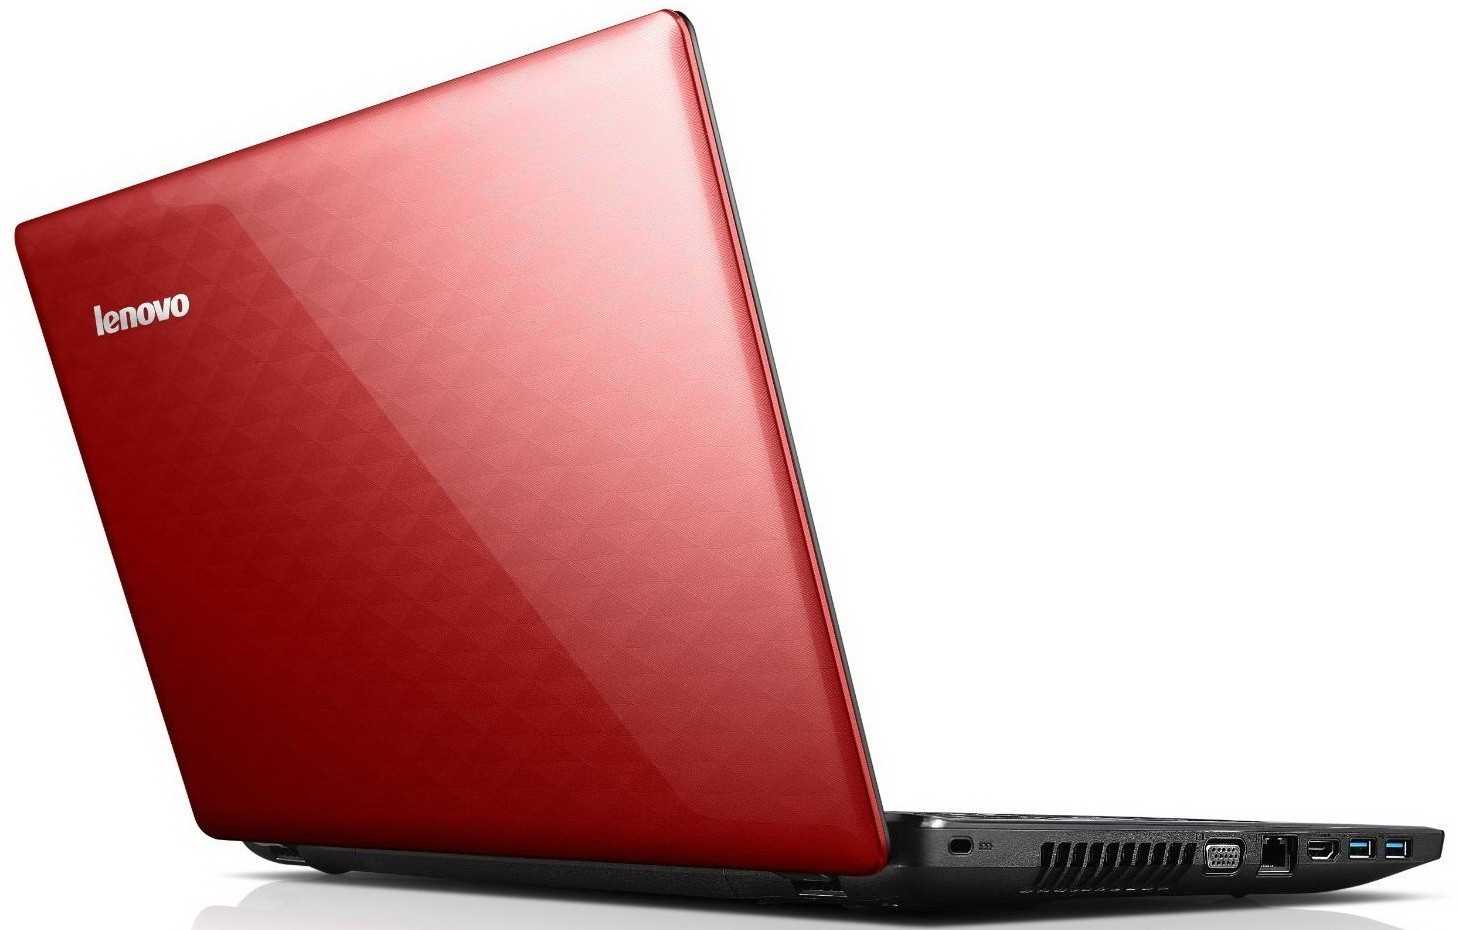 Ноутбук lenovo ideapad z510 — купить, цена и характеристики, отзывы